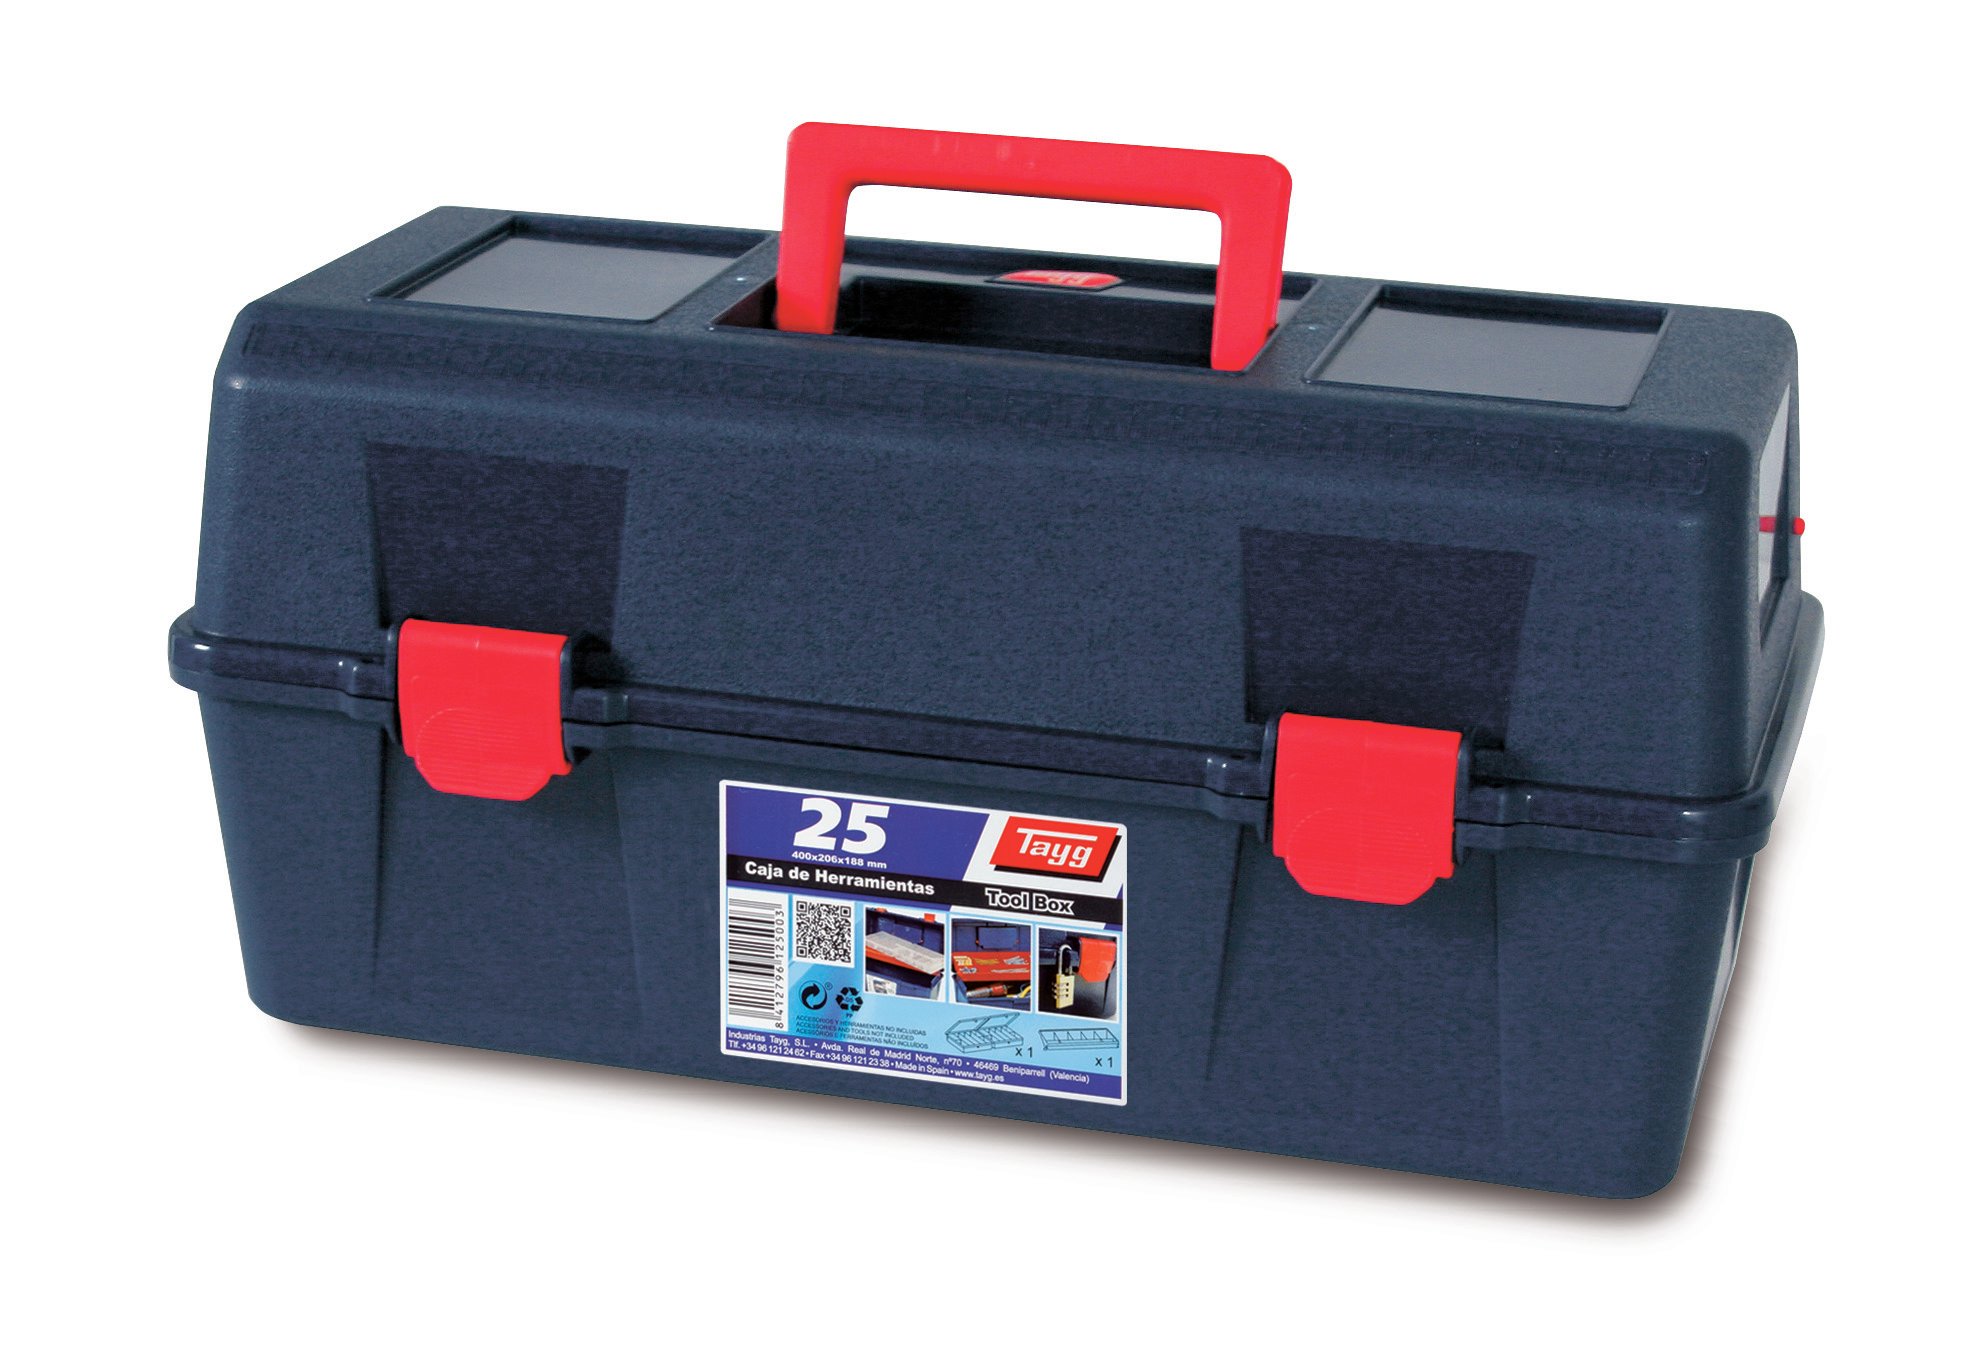 Ящик пластиковий для інструментів Tayg Box 25 Caja htas, з 2 органайзерами, 40х20,6х18,8 см, синій (125003) - фото 1